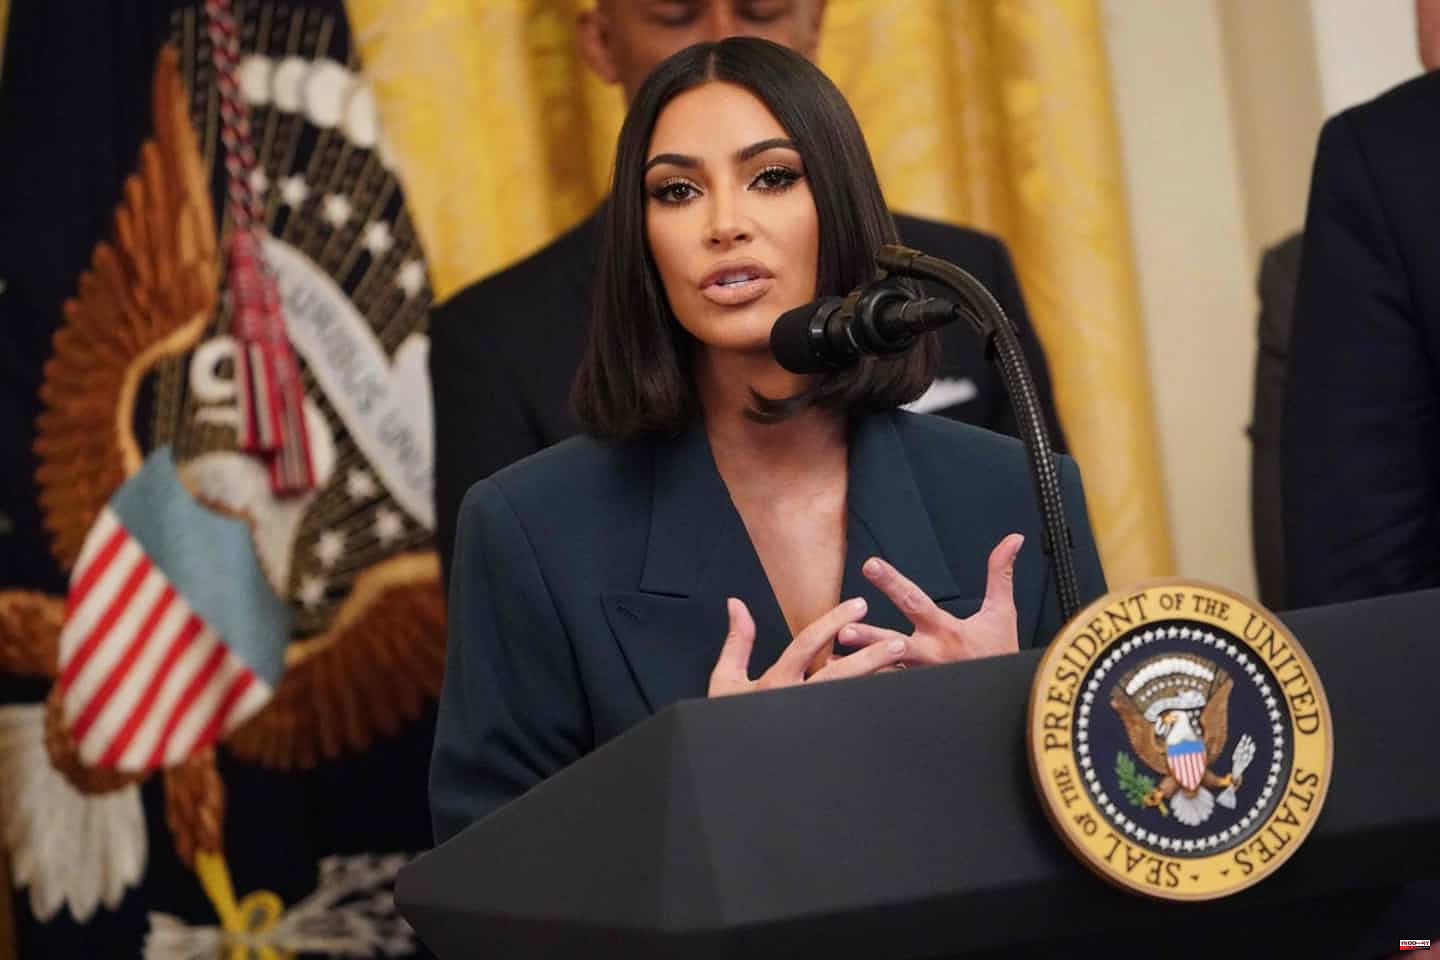 Kim Kardashian wants to found a law firm specializing in prison reform